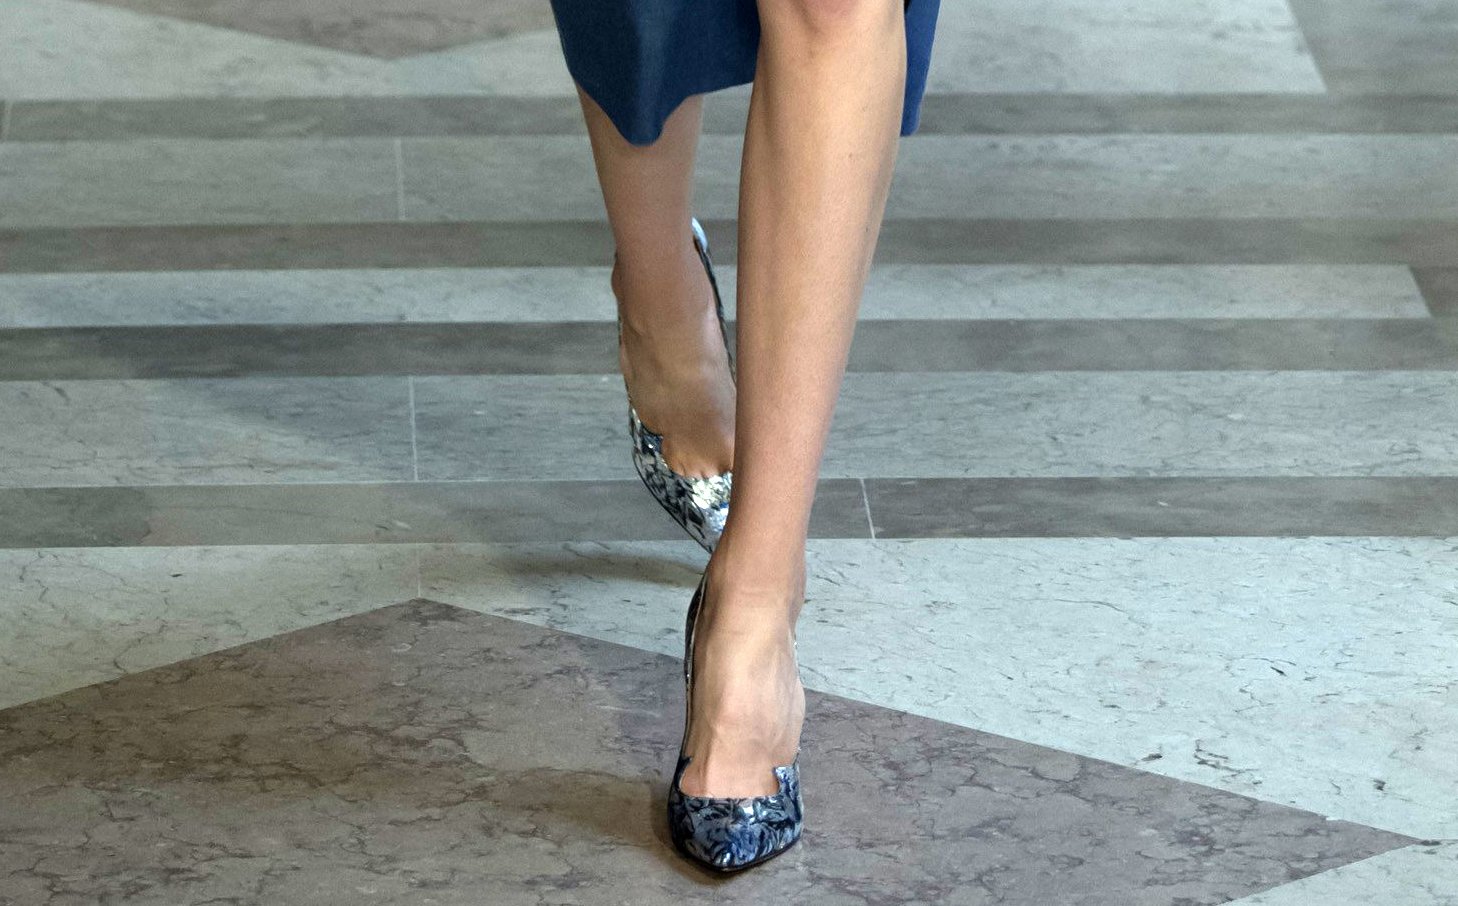 Carolina Herrera shoes spring 2017